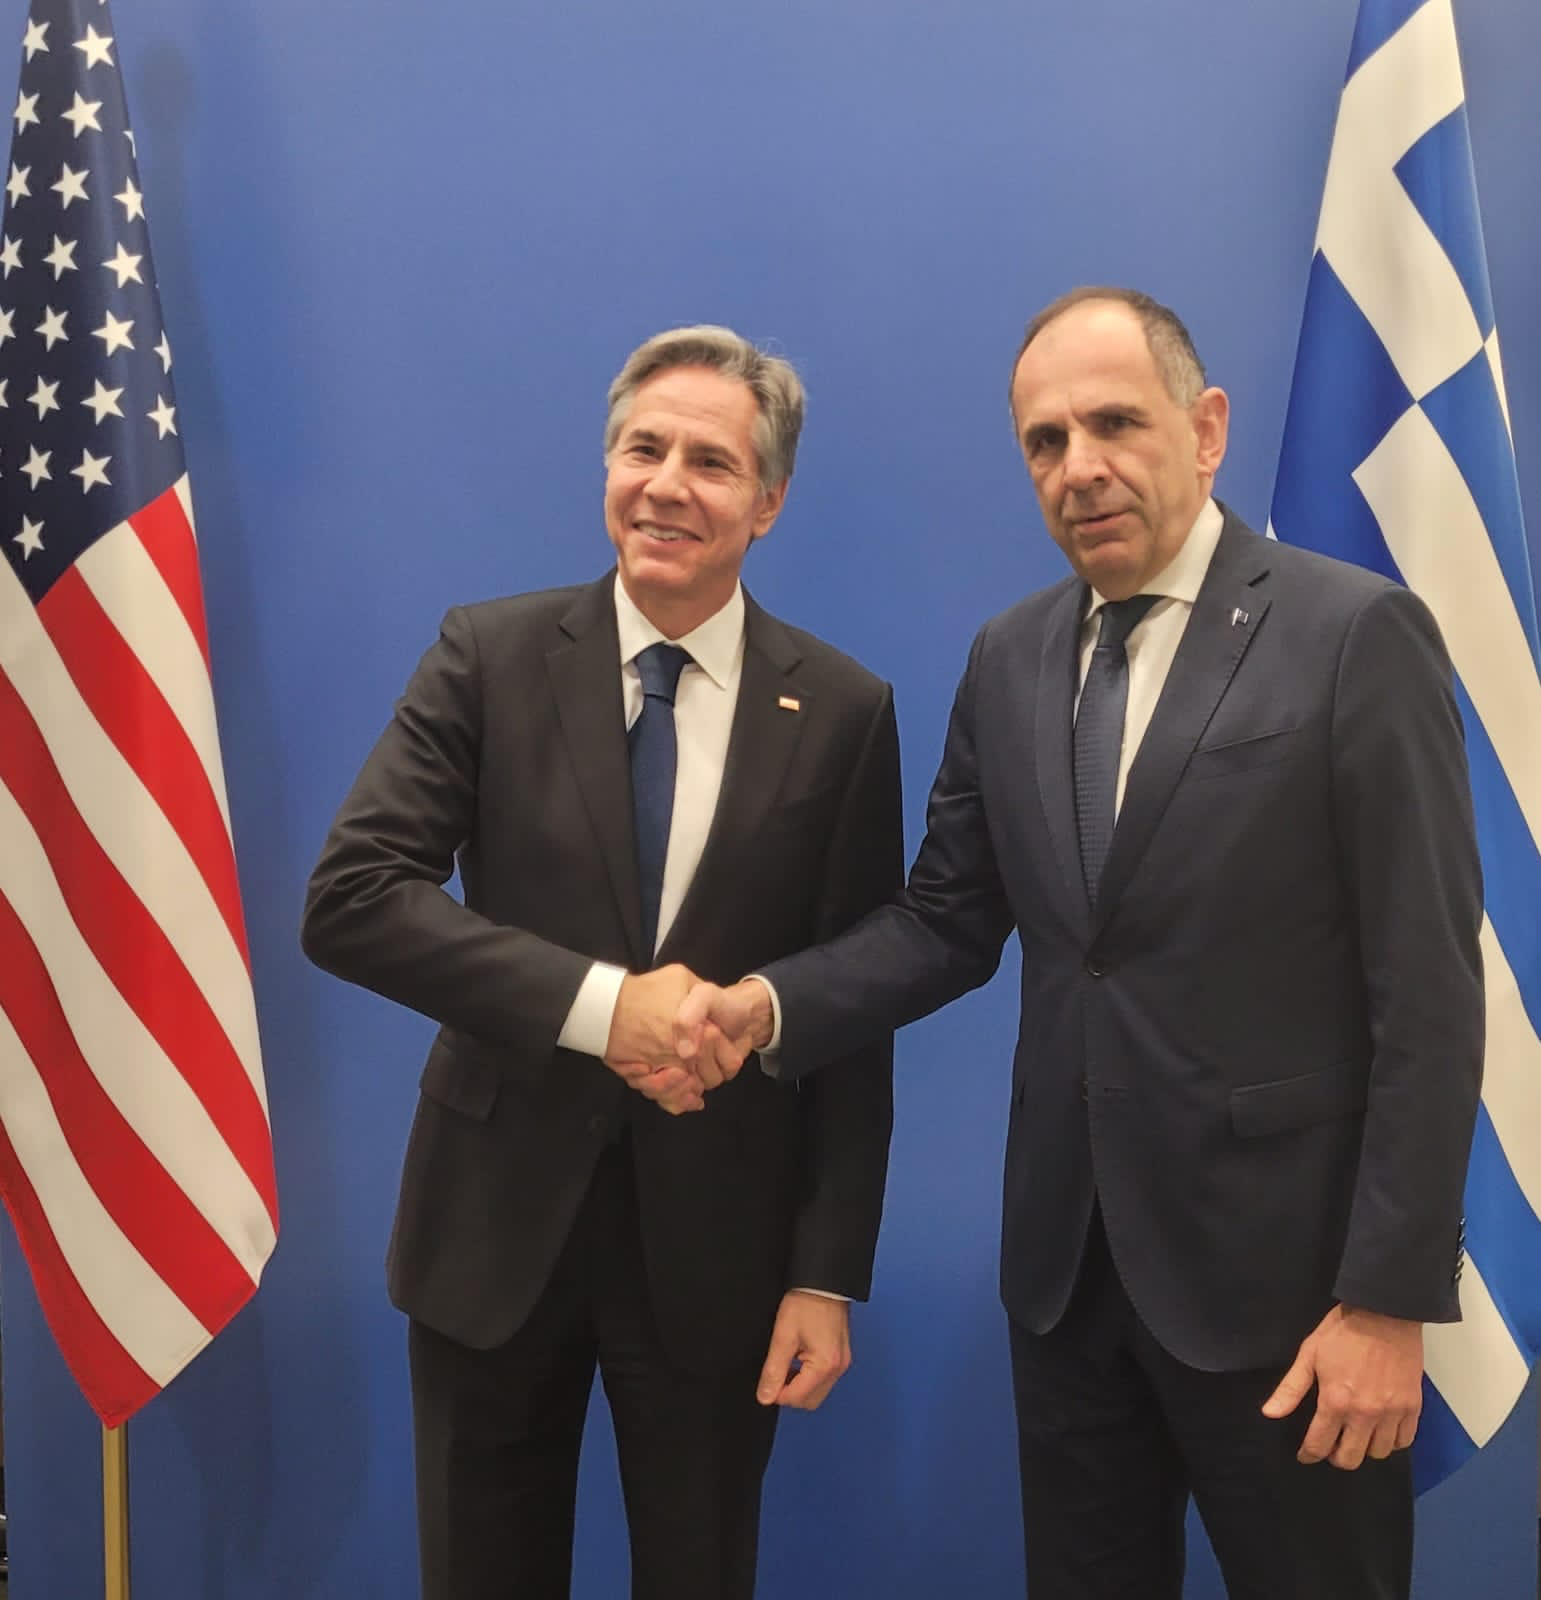 Βρυξέλλες: Συνάντηση Γεραπετρίτη- Μπλίνκεν -Άριστο επίπεδο των σχέσεων Ελλάδας-ΗΠΑ